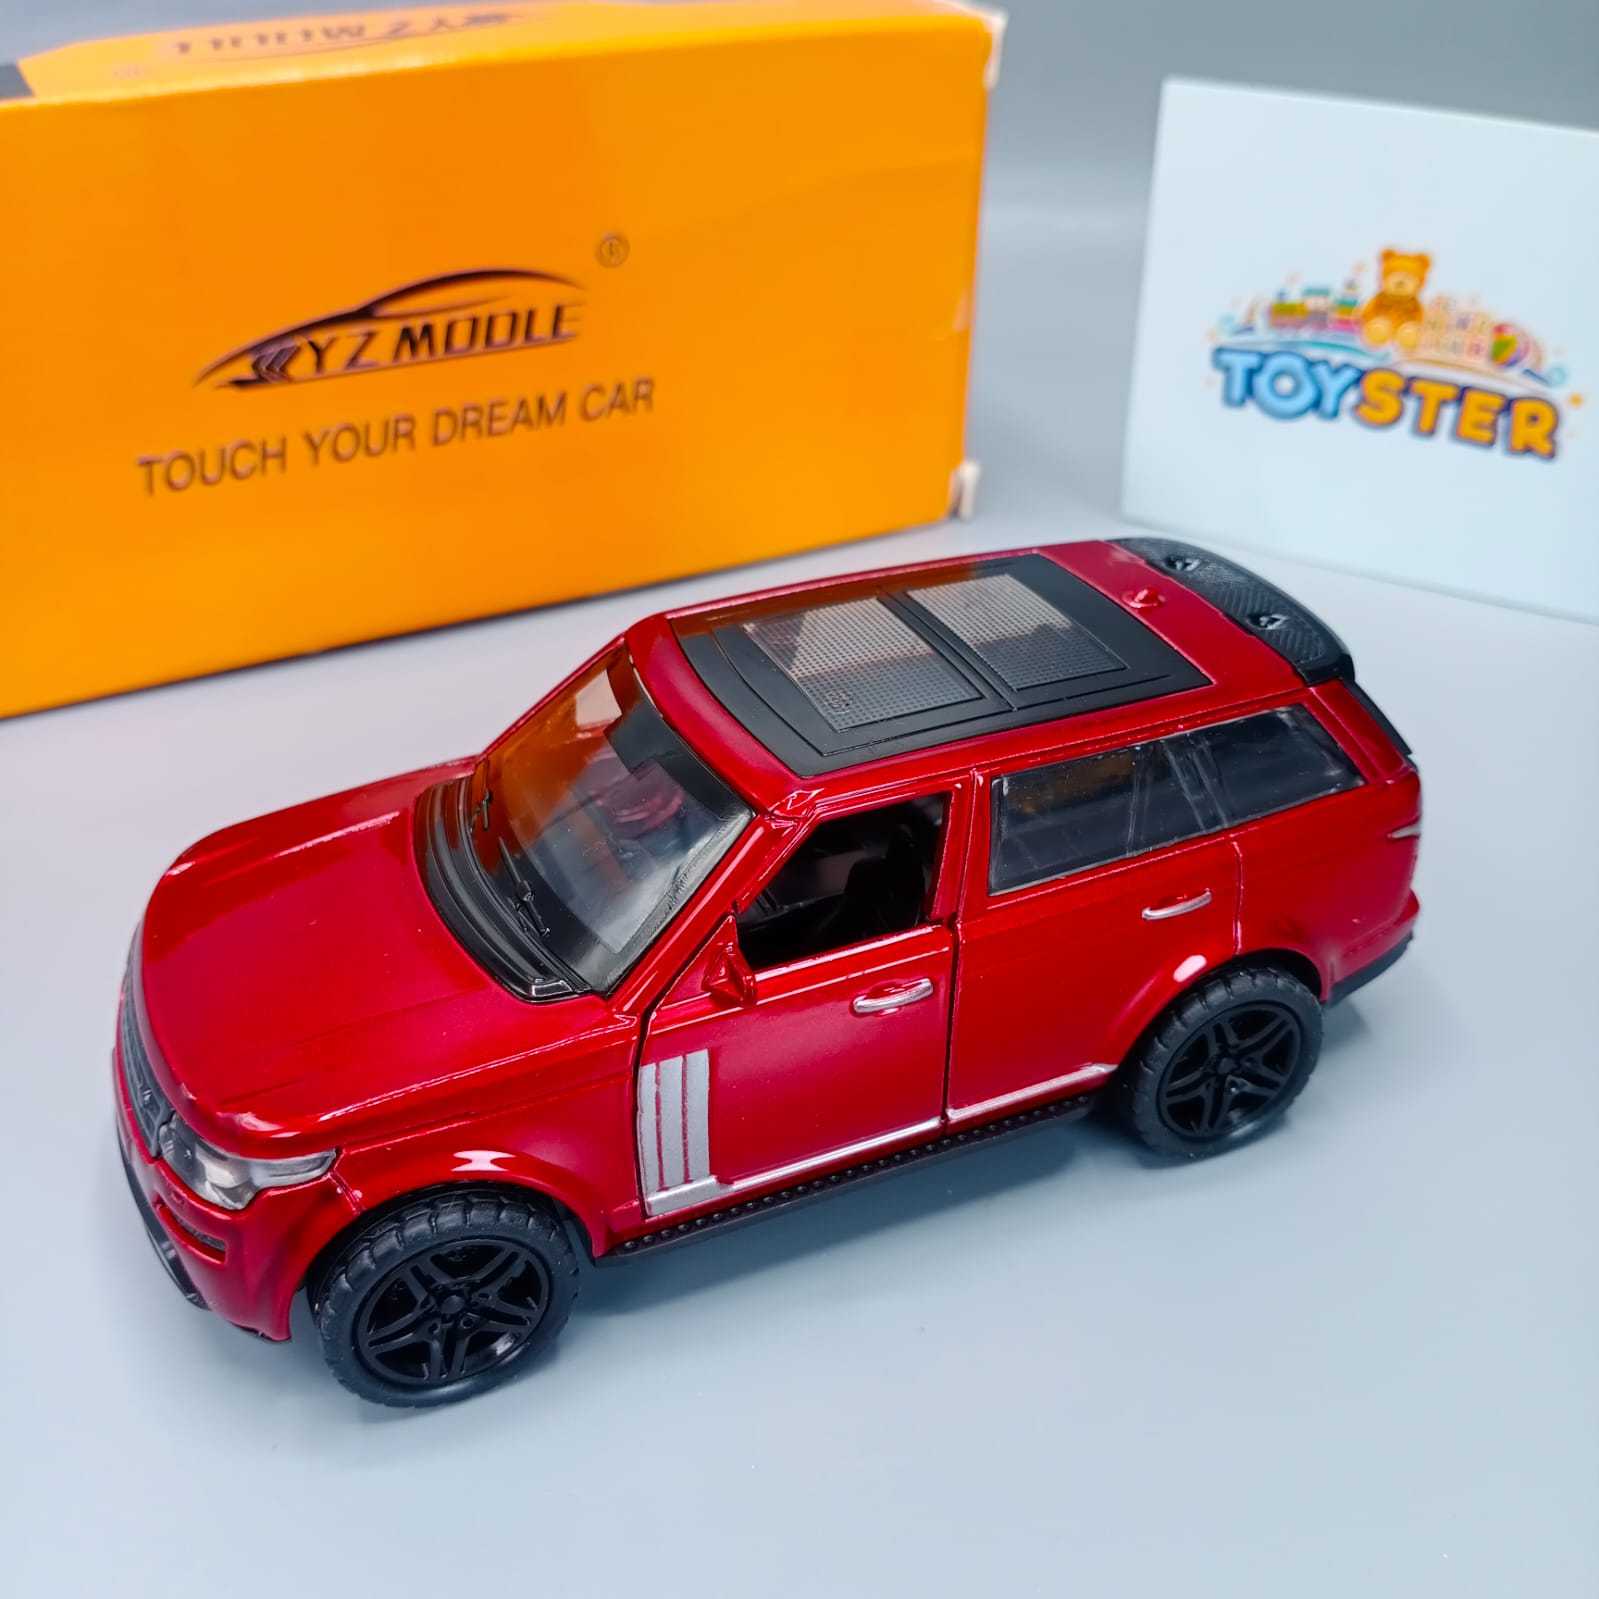 Die-Cast Range Rover Metal Car Toy